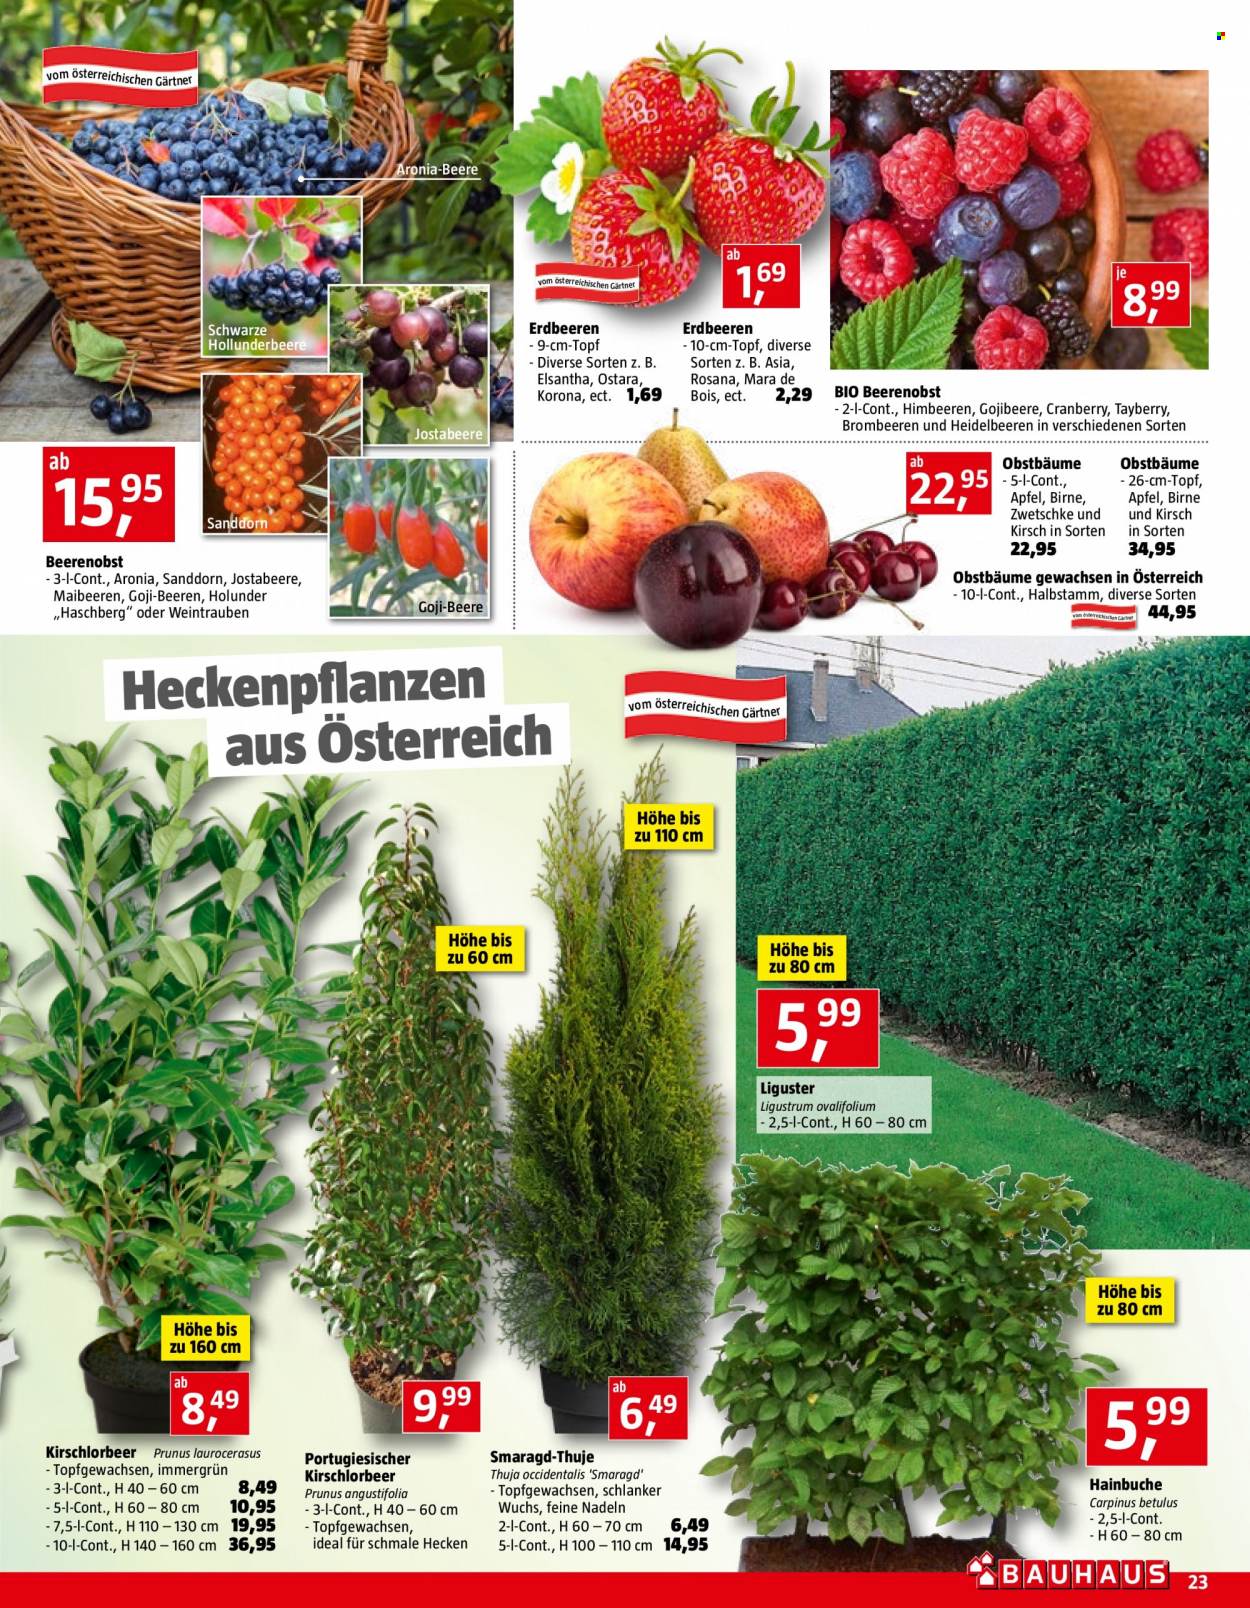 Angebote Bauhaus - Verkaufsprodukte - Äpfel, Erdbeeren, Obstbaum. Seite 23.